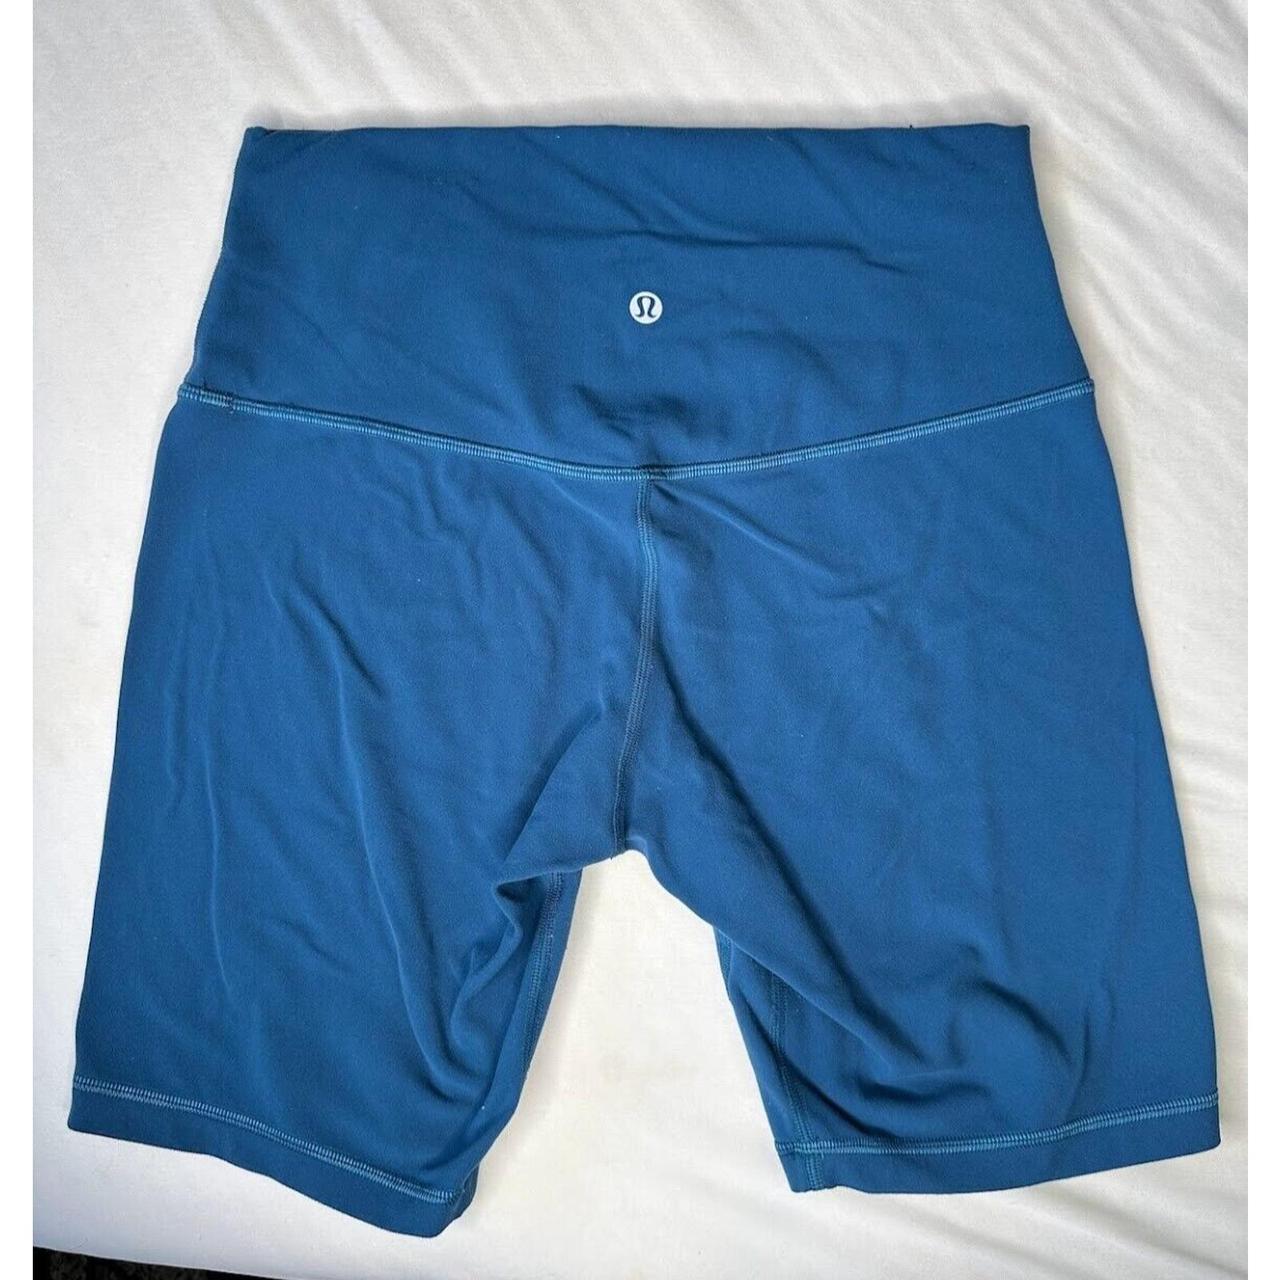 Lululemon wunder train shorts 4” utility blue. - Depop